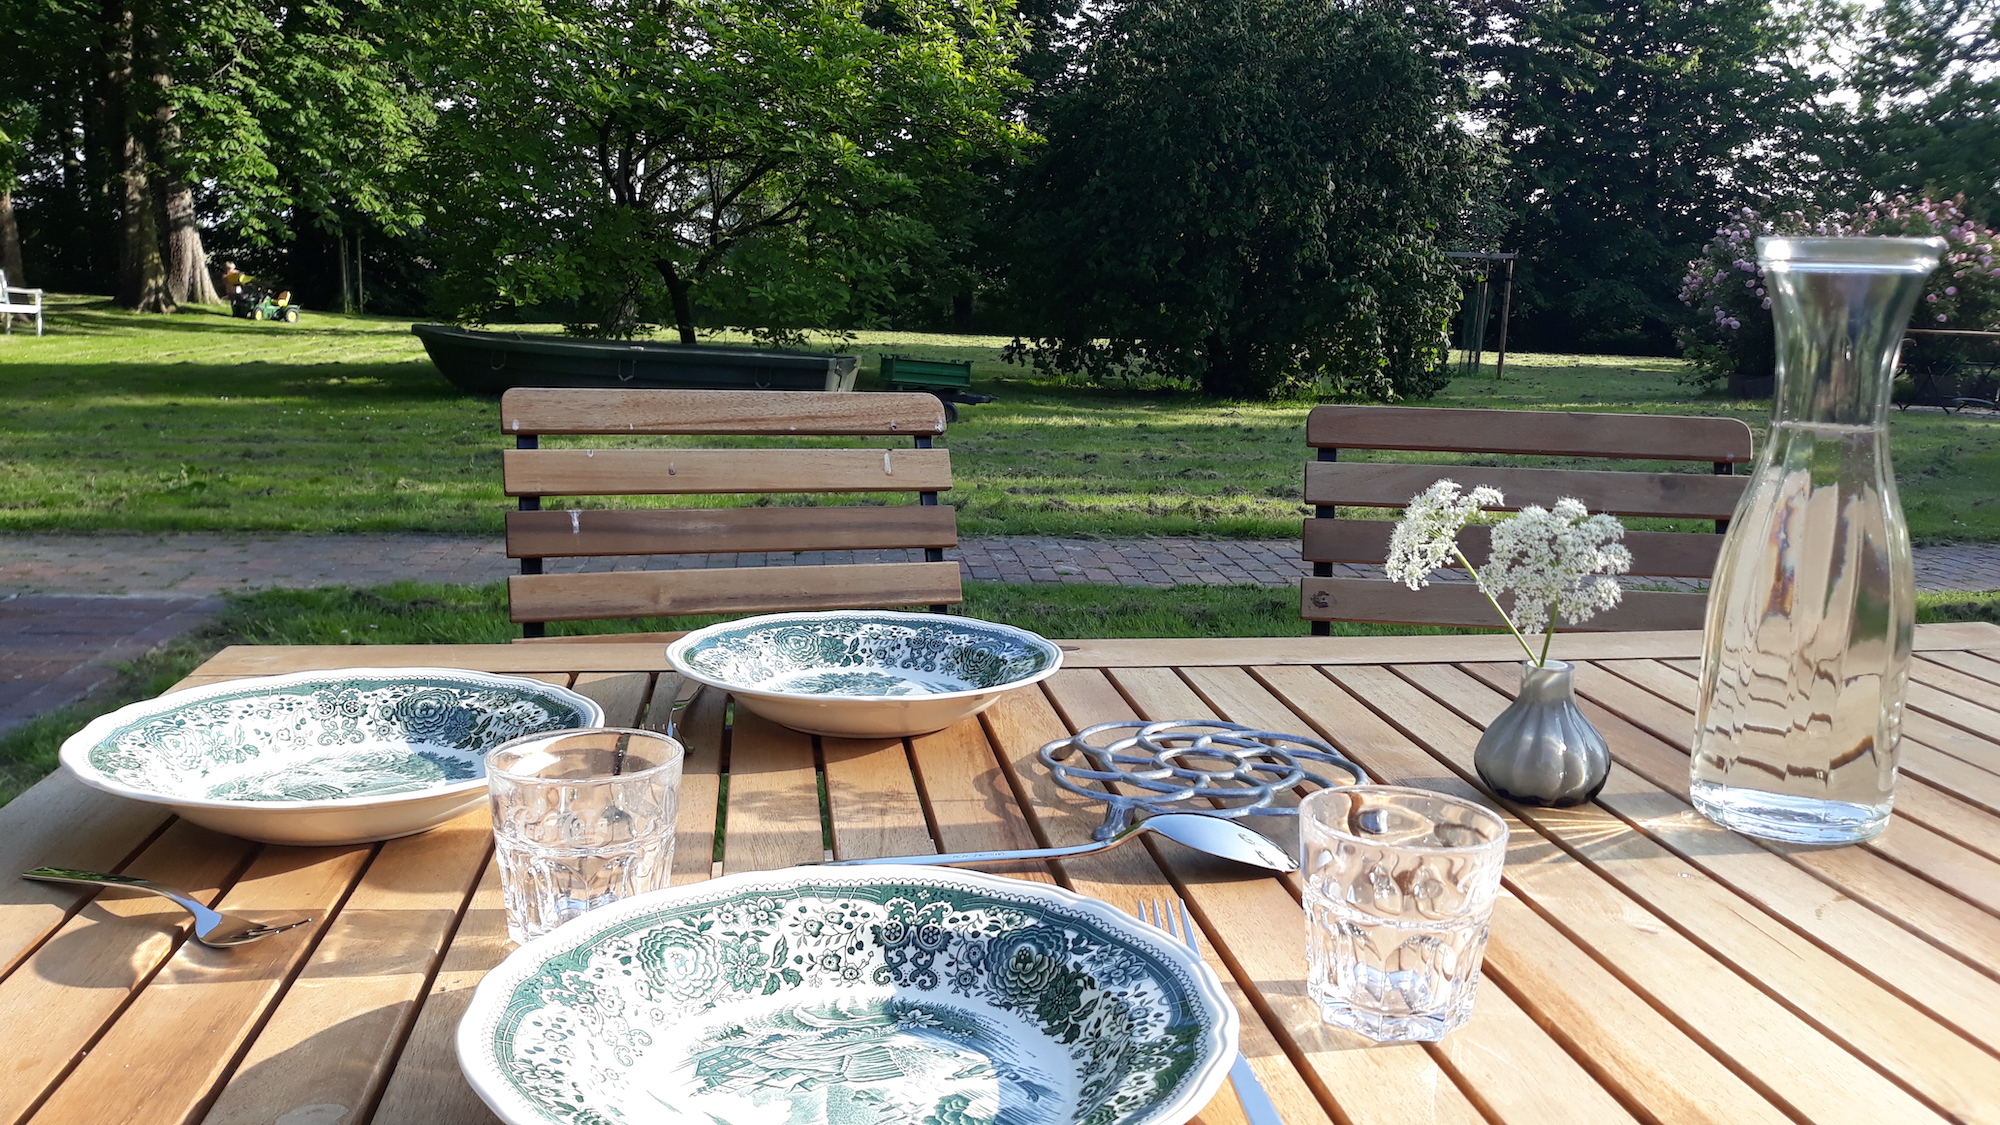 Zu sehen ist im Vordergrund ein gedeckter Tisch mit altem Villeroy und Boch-Geschirr, Giersch in einem Väschen und einer Wasserkaraffe. Im Hintergrund ein Boot und ein parkähnlicher Garten.